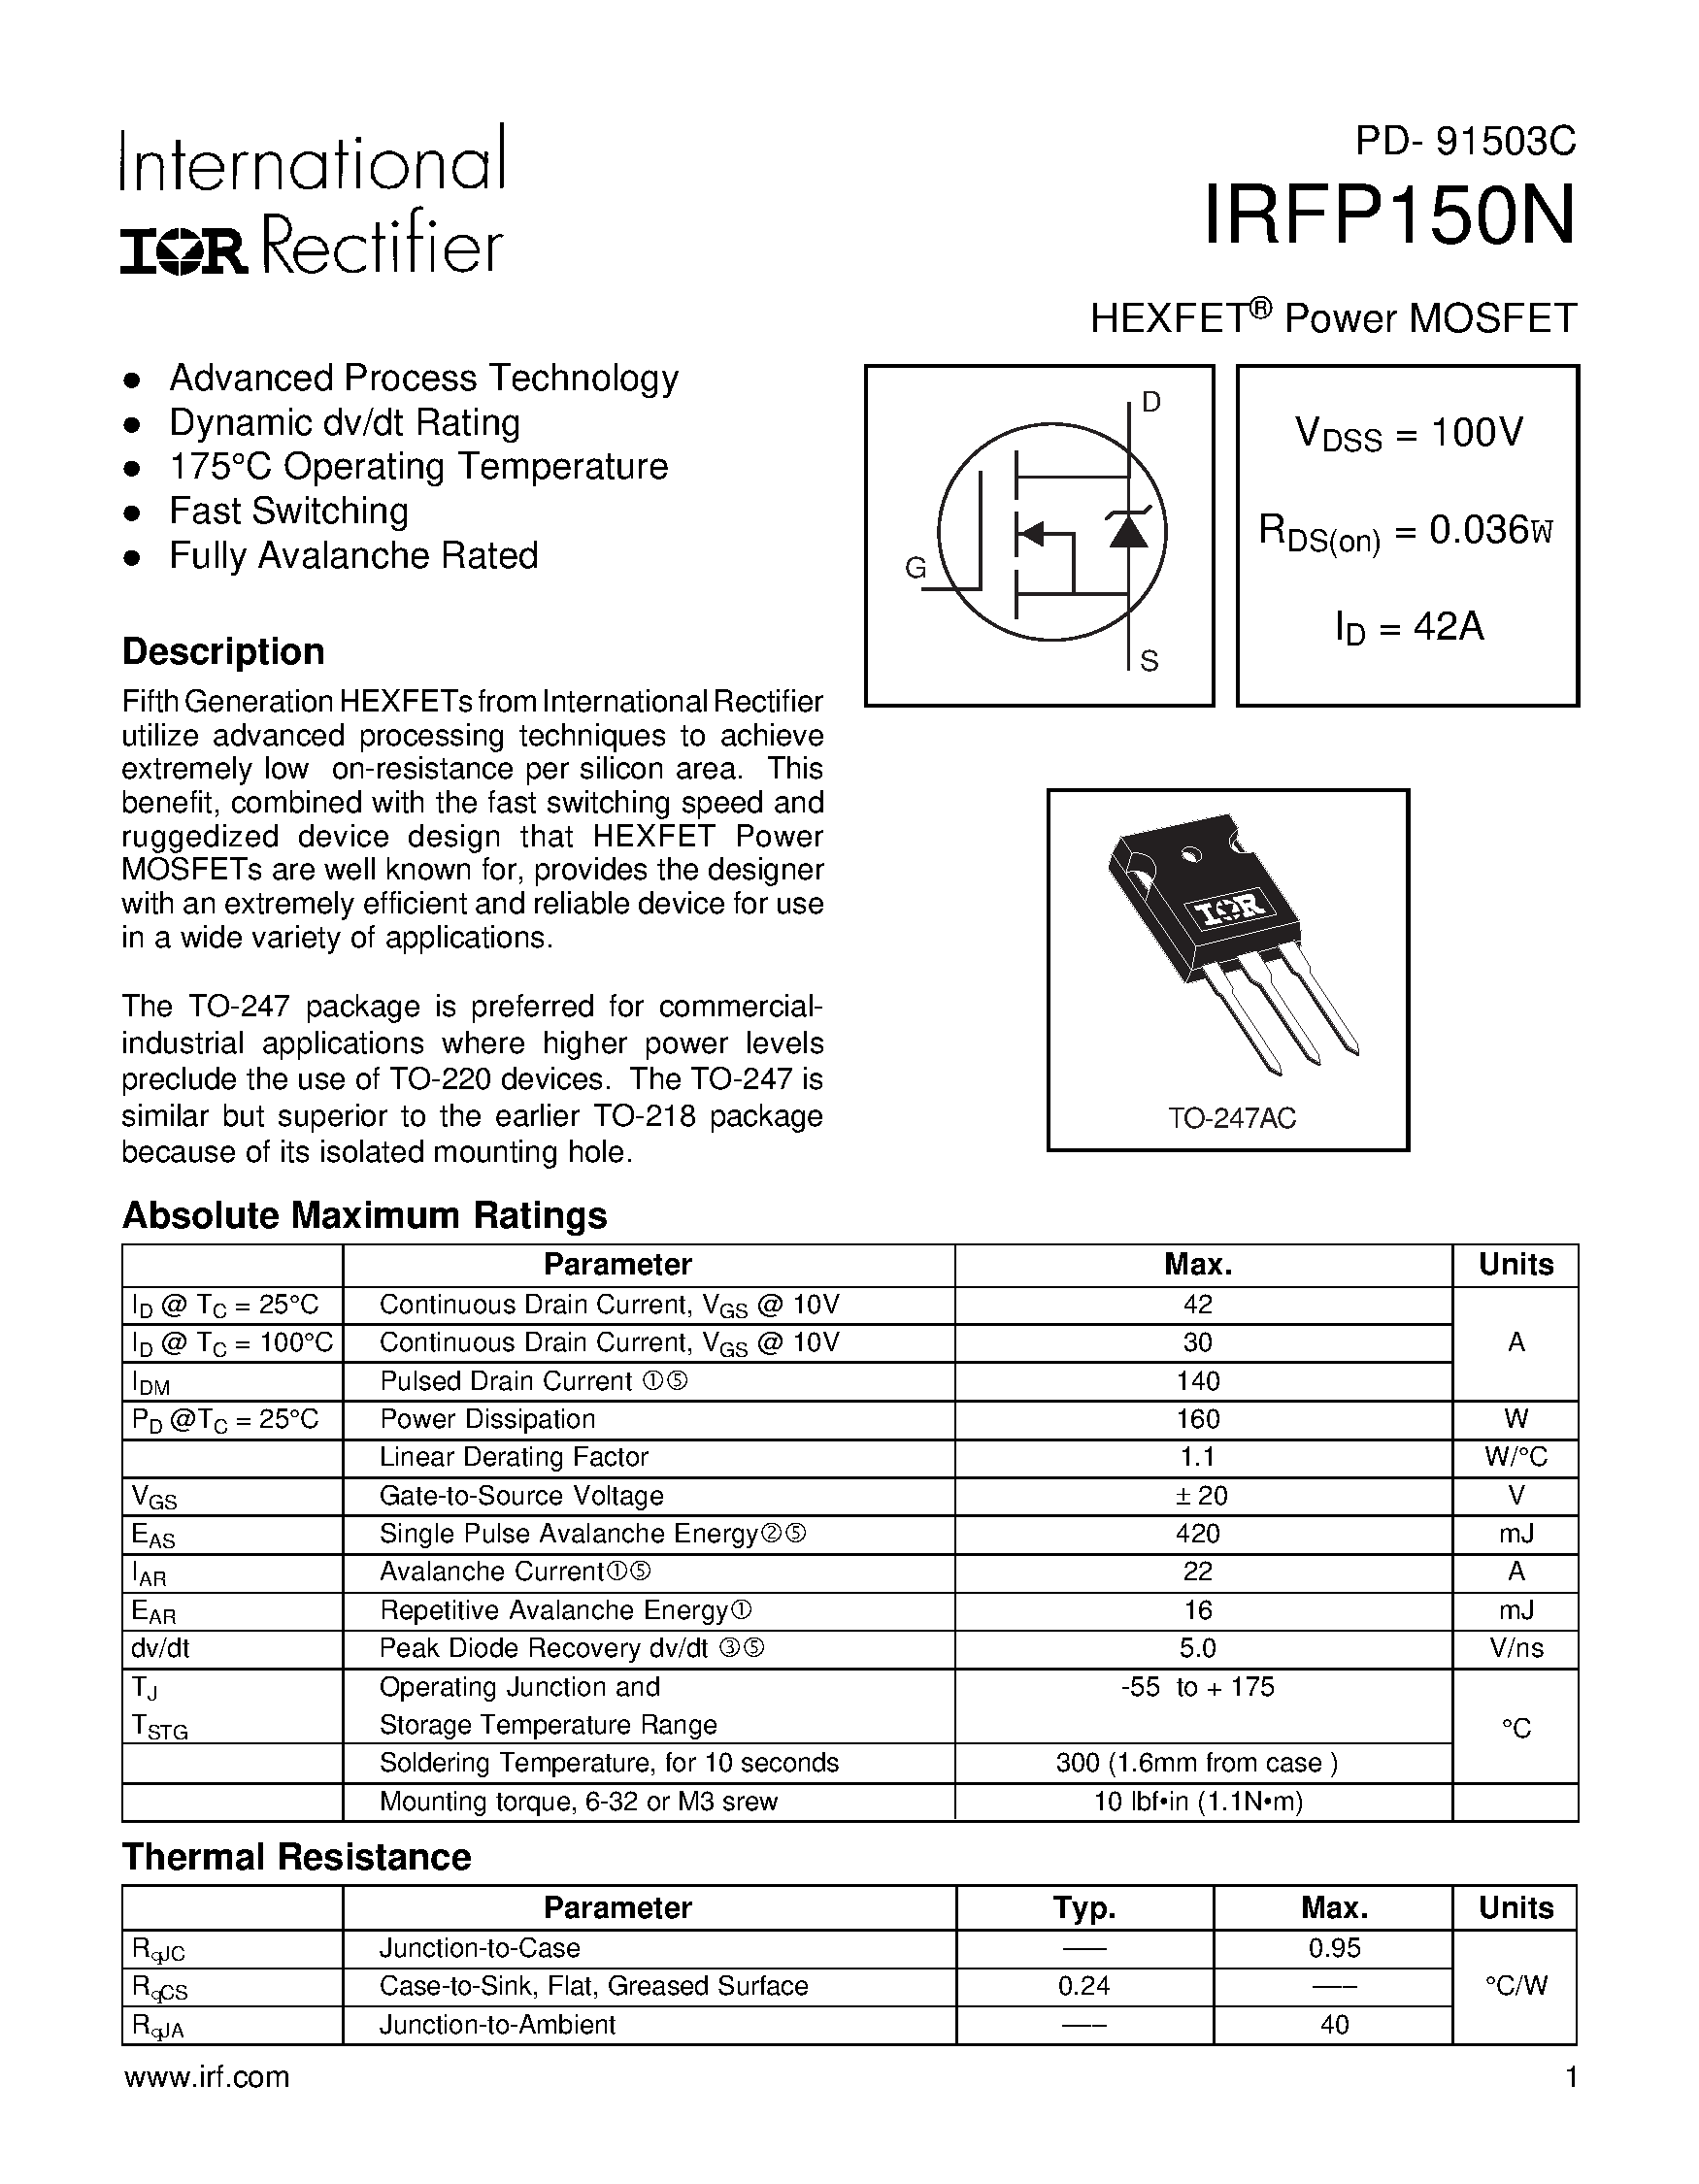 Datasheet IRFP150N - Power MOSFET page 1